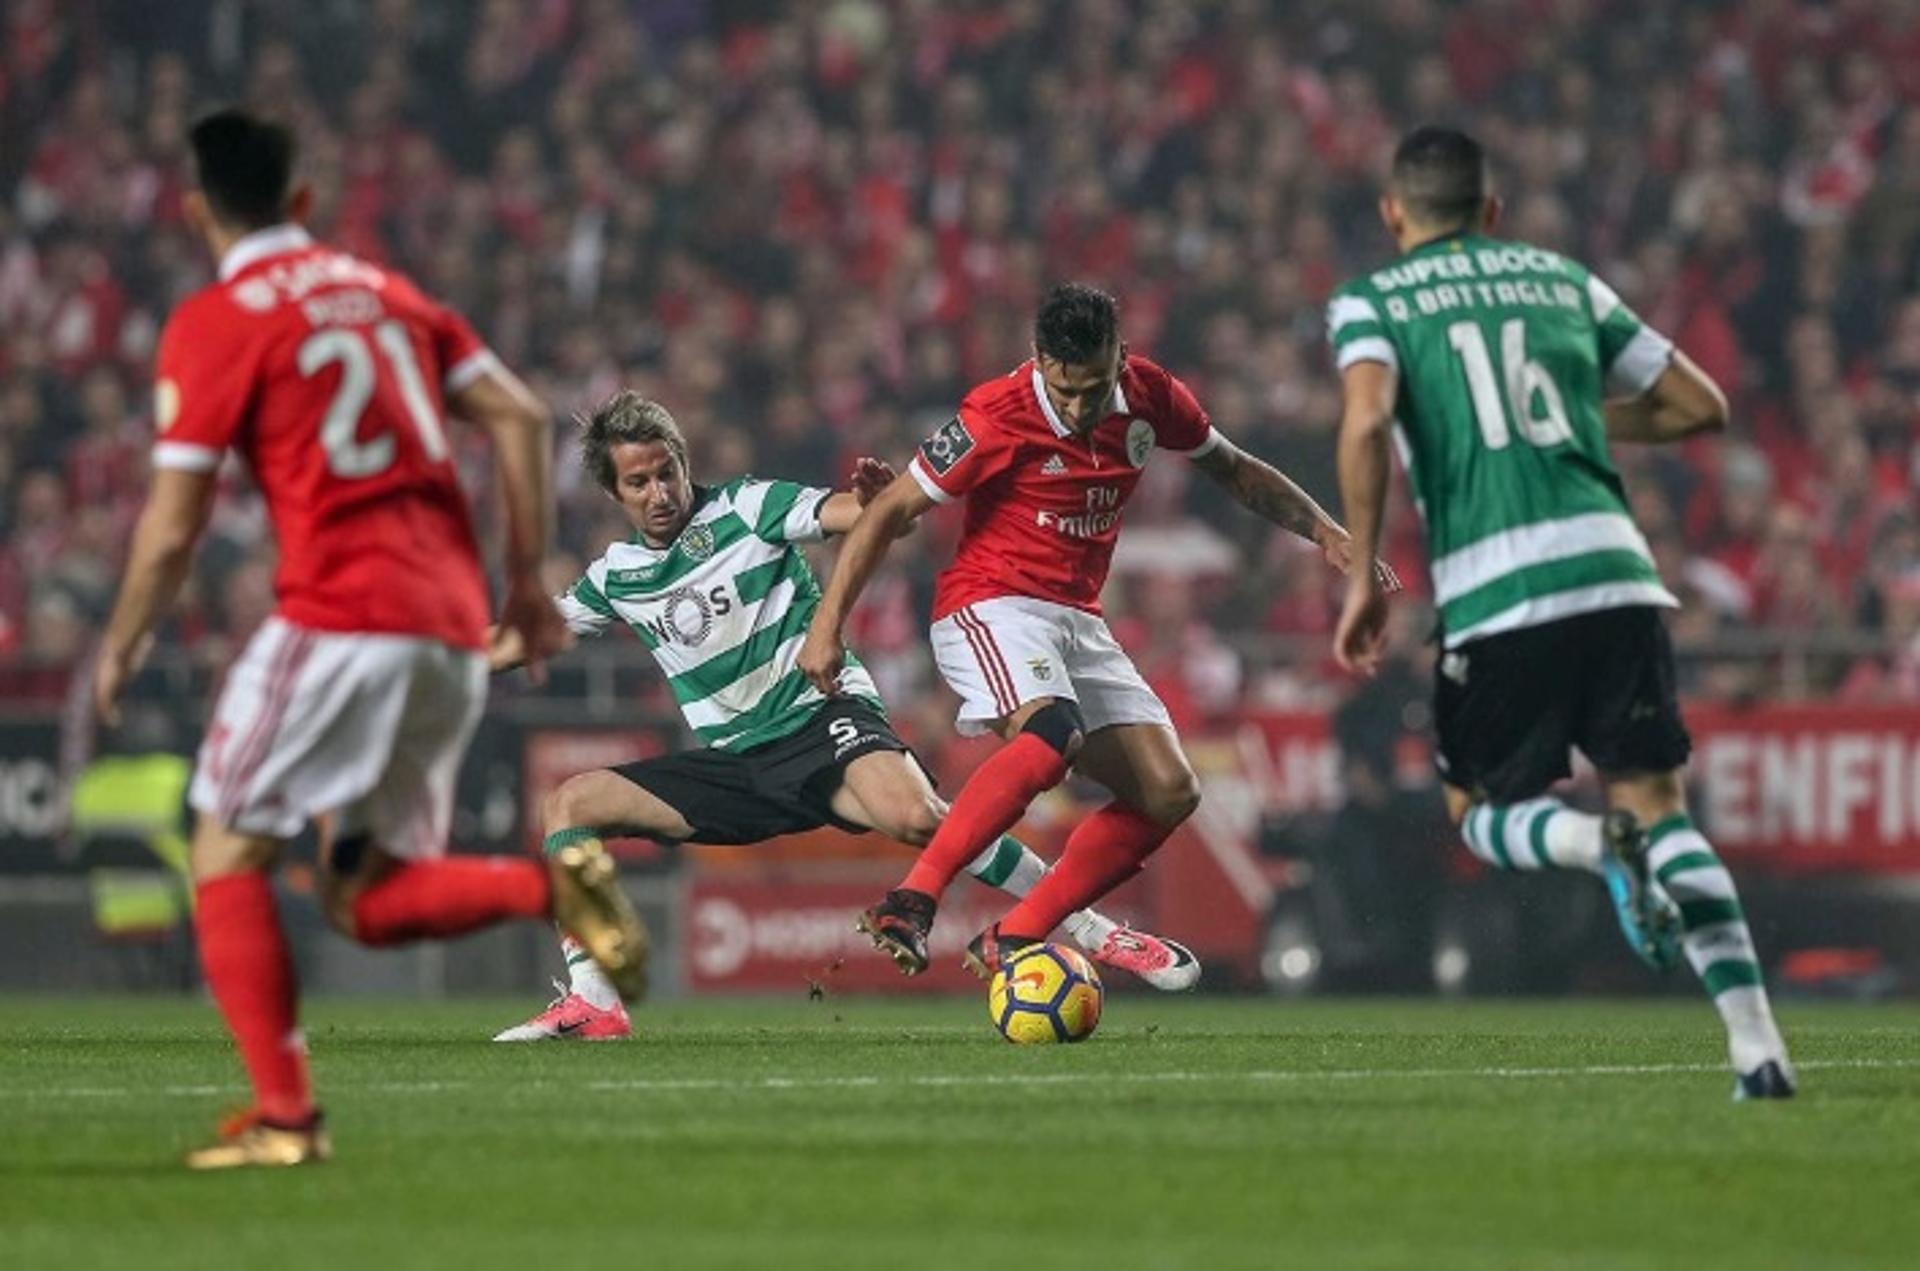 Jonas marca no minuto final e evita derrota do Benfica diante do Sporting